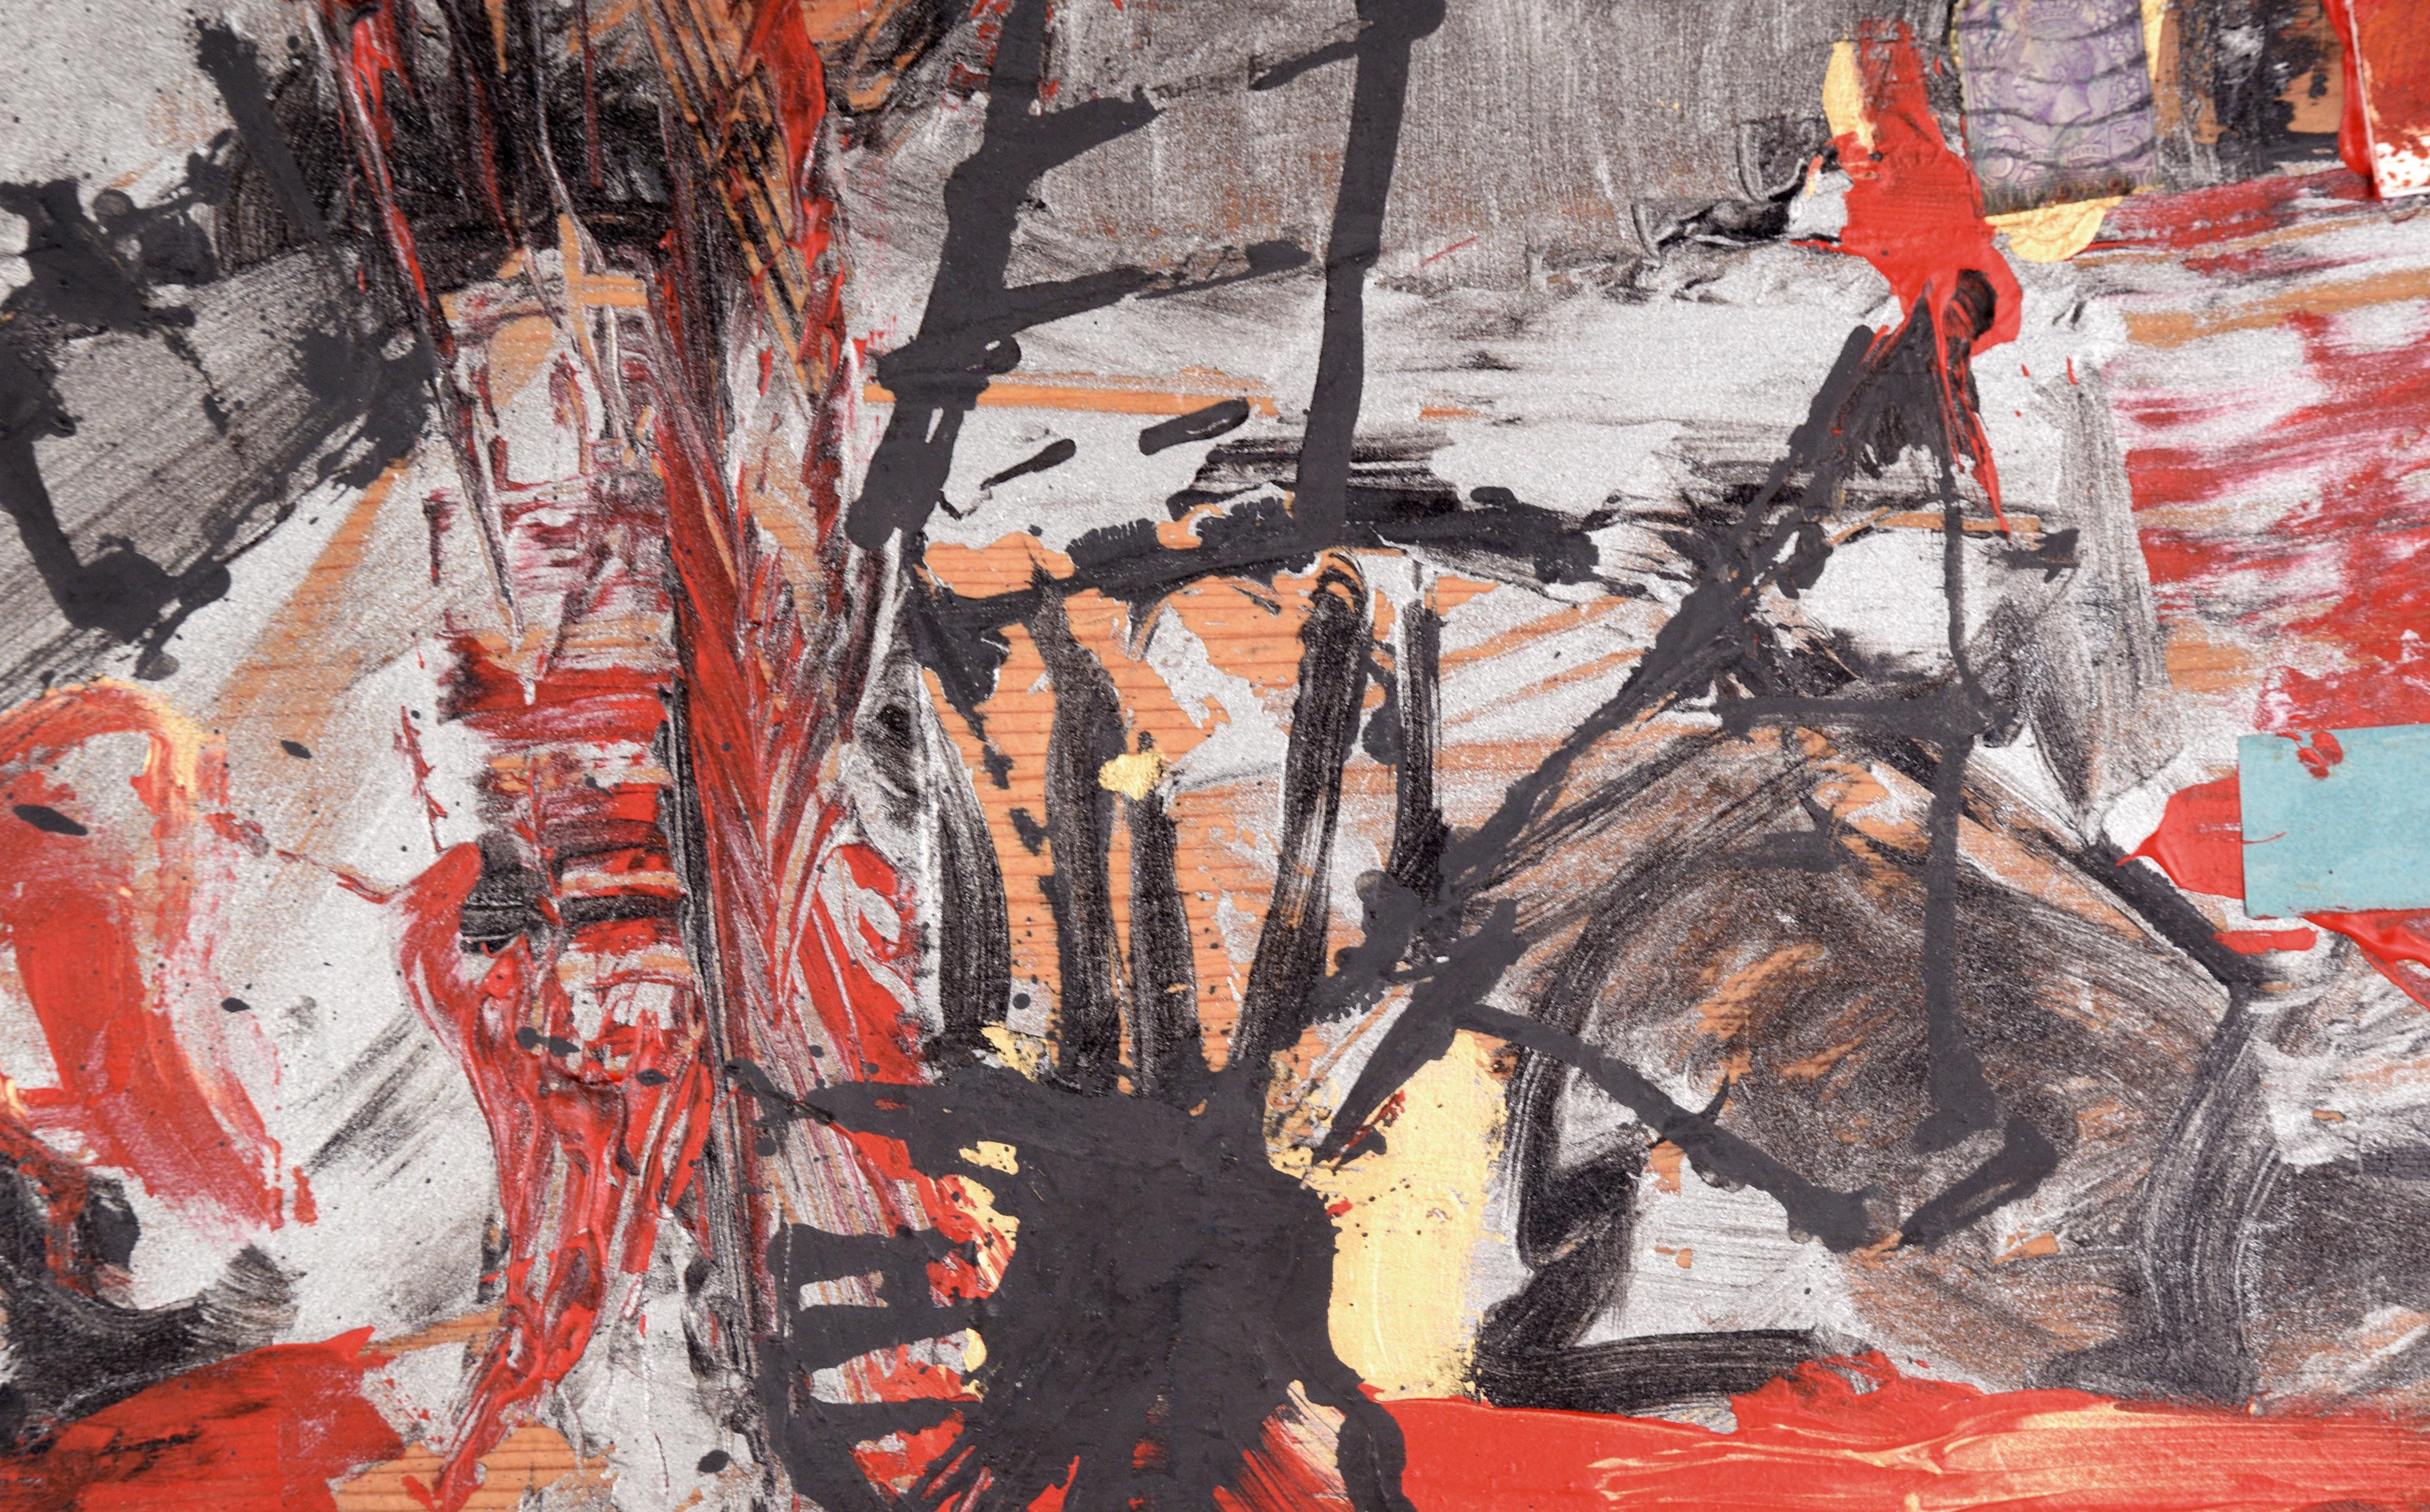 Peinture à l'huile expressionniste abstraite avec des objets assemblés de l'artiste de la Bay Area Michael Pauker (américain, né en 1957). Des coups de pinceau expressifs noirs et rouge vif sont superposés à des lames de verre, des tampons et la